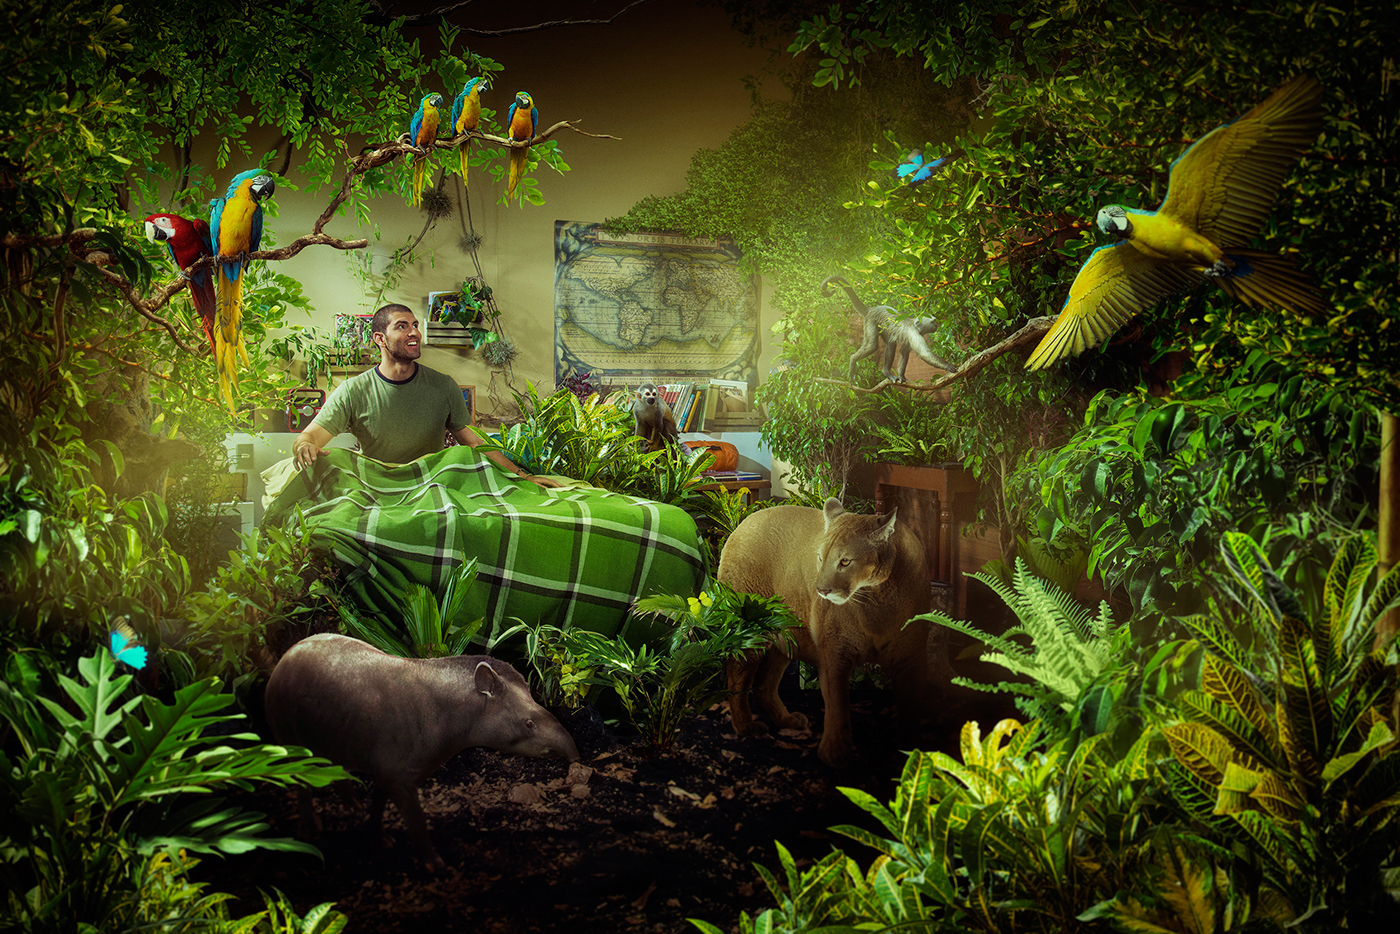 Adobe Portfolio chaide  ecuador  dreams   Sueños selva Galapagos Cama bed